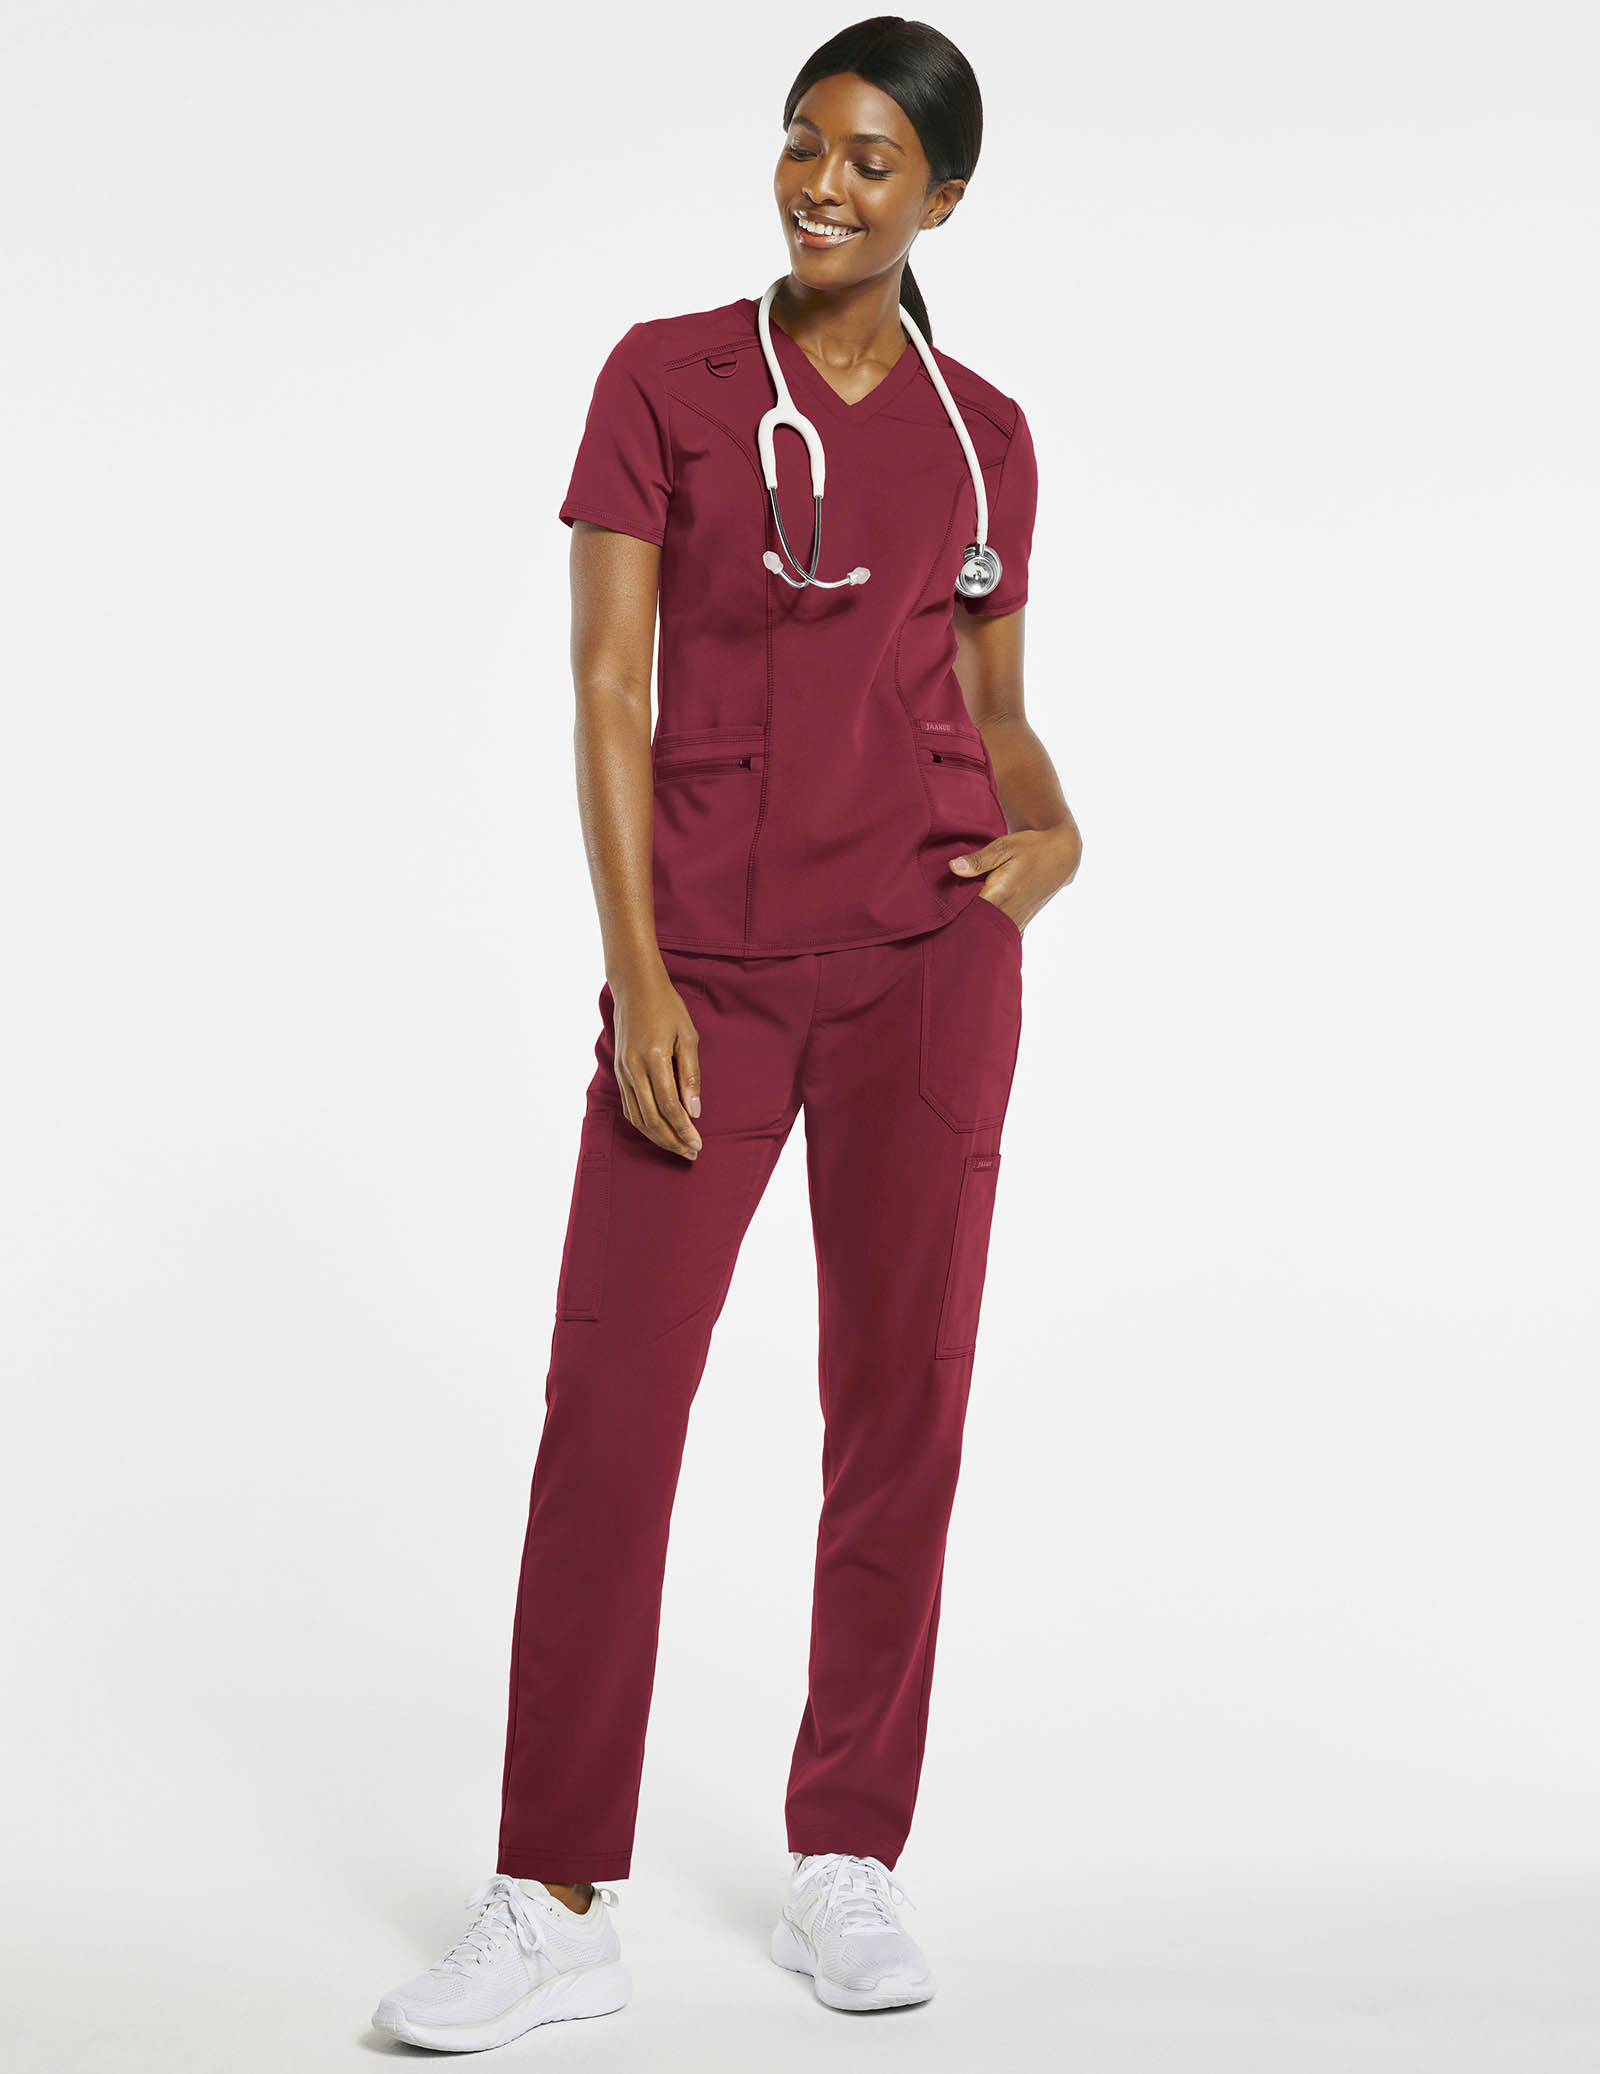 Women's Medical Nursing Scrub Black Cargo Pant Free Shipping 